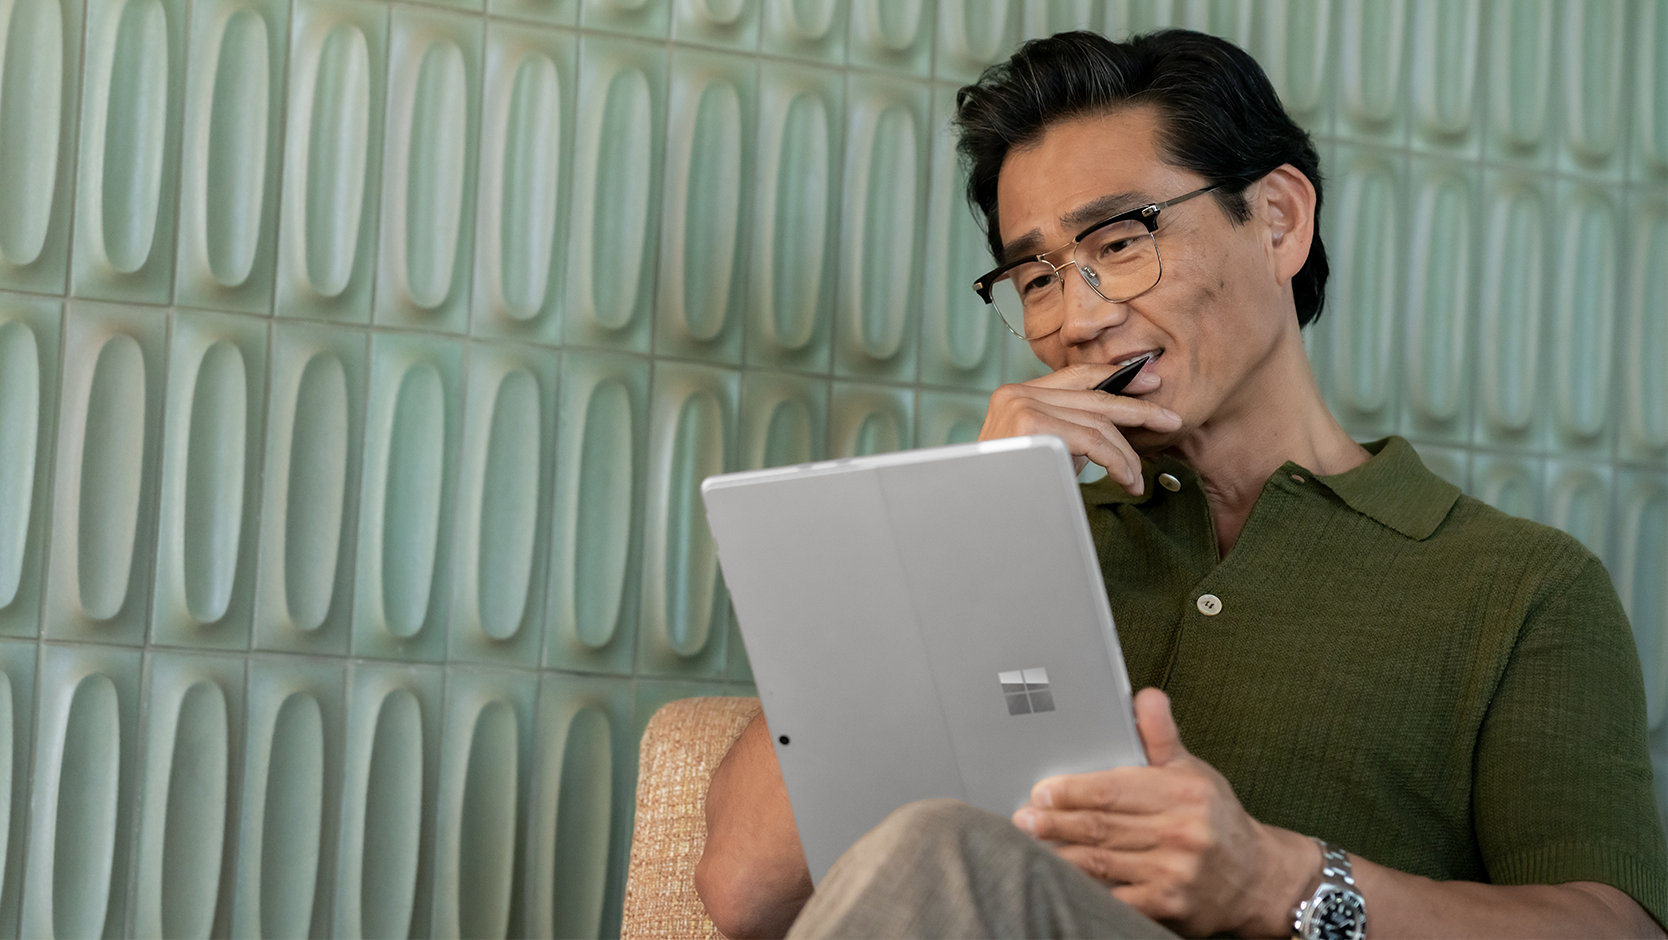 法人向け Surface Pro 10 をタブレットとして使う人。